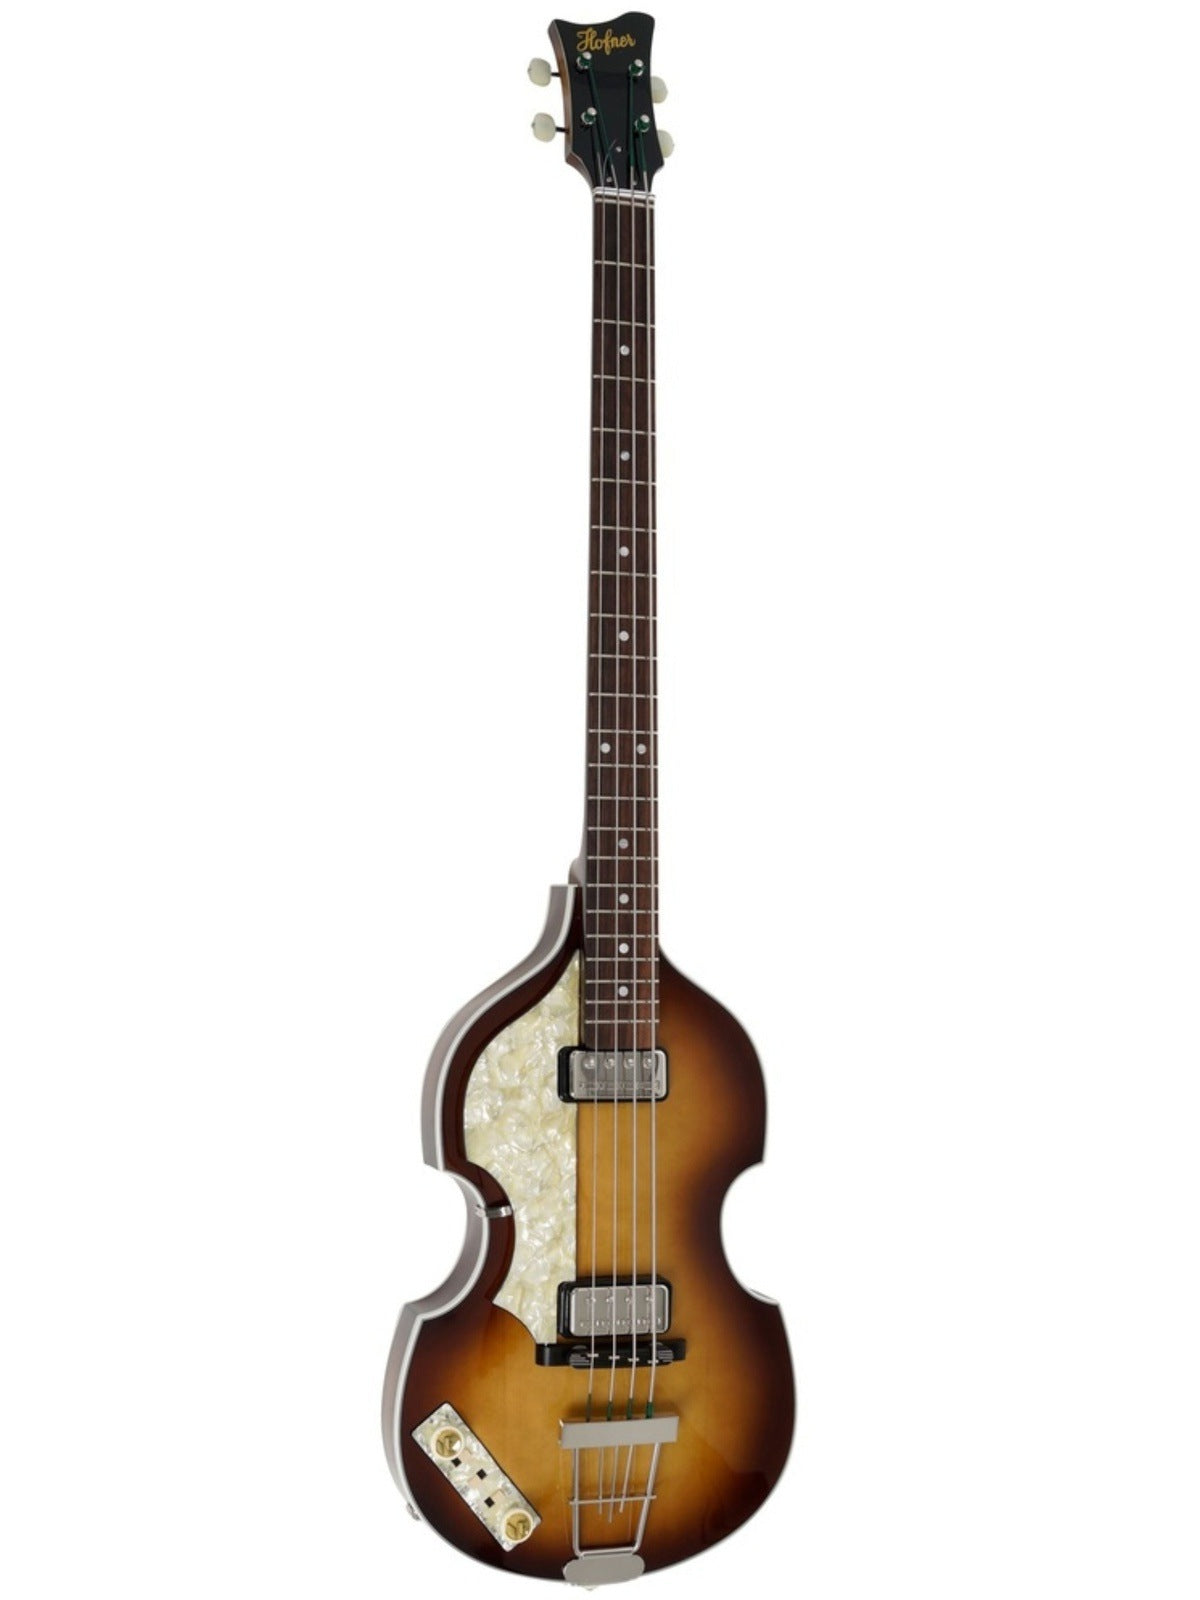 Höfner 500/I '62 Re-Issue 'Mersey' Violin Bass, Left-Handed